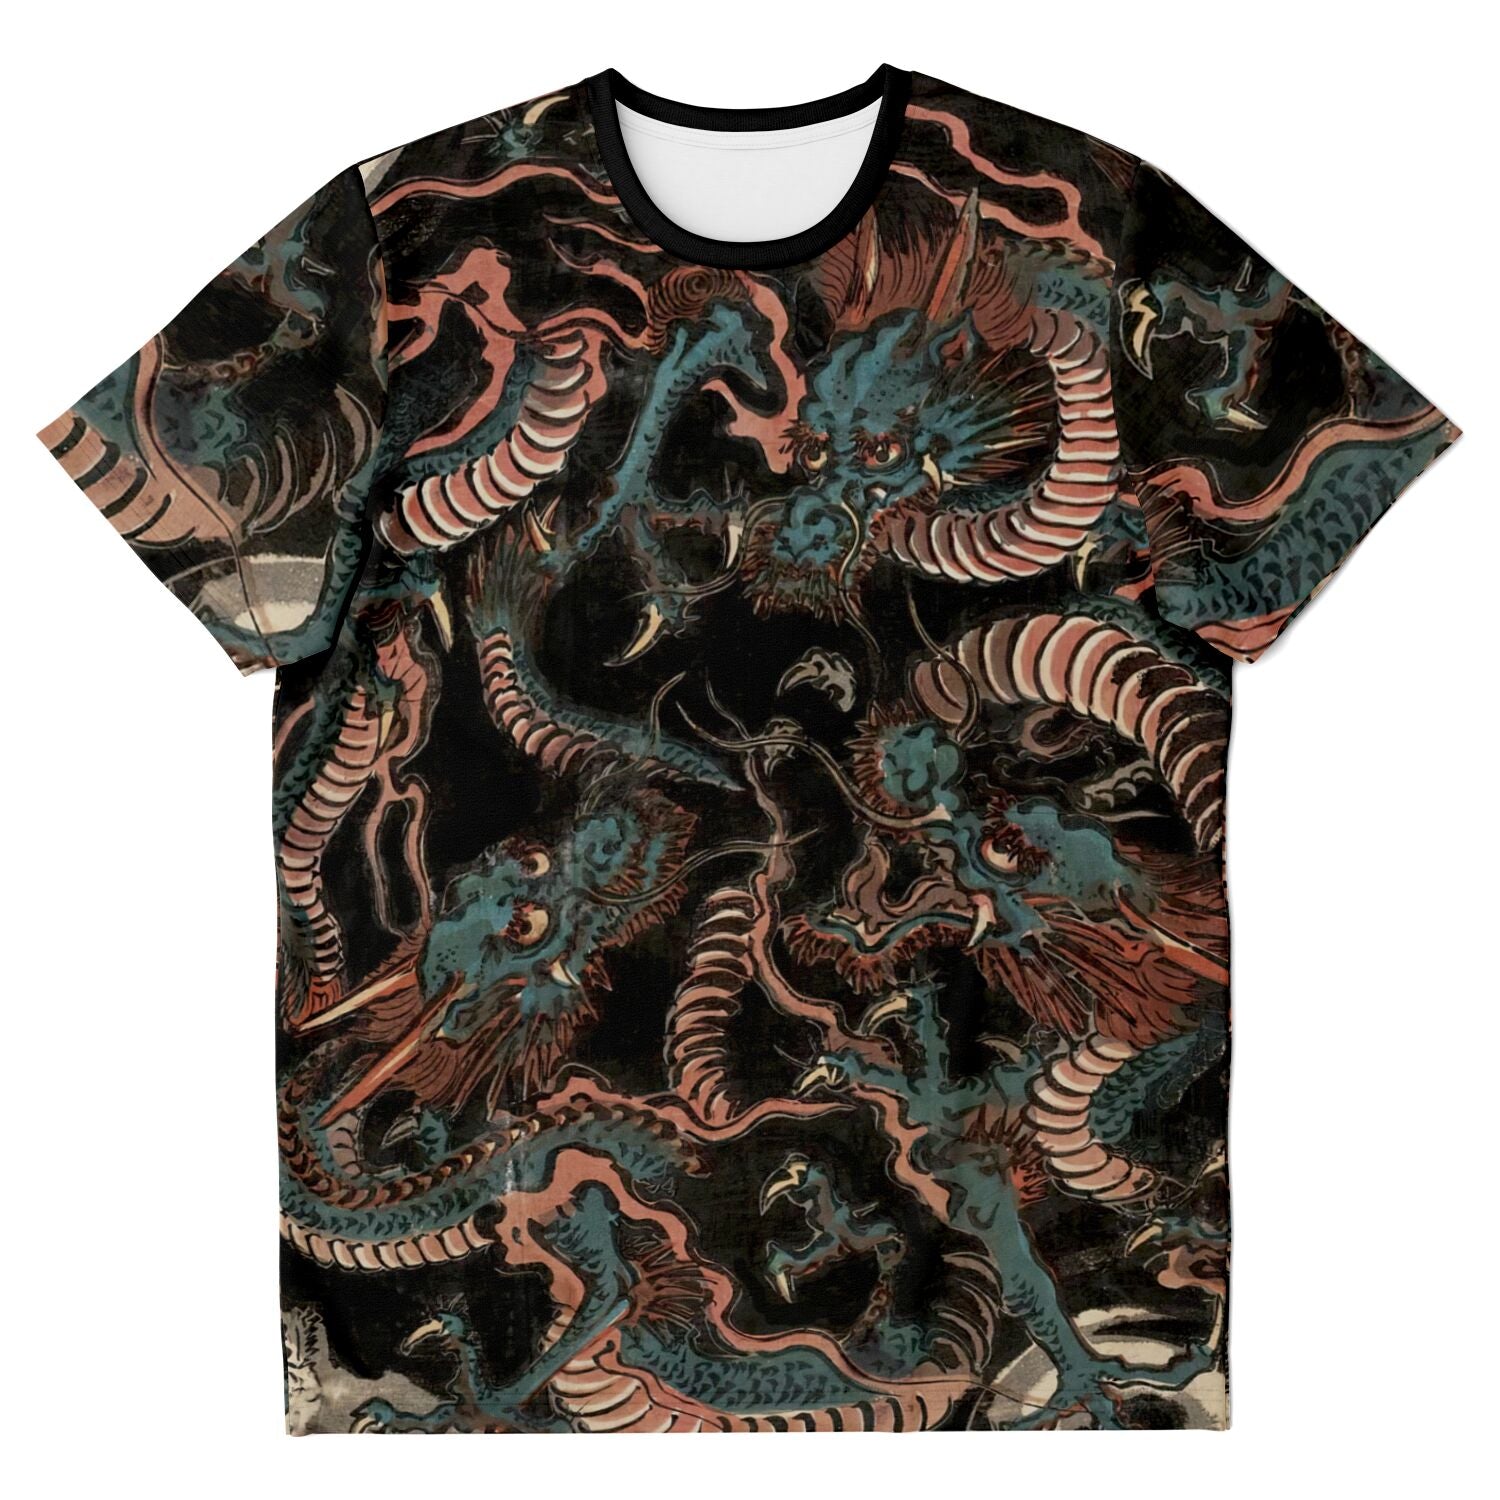 T-shirt XS Water Dragons by Keisai Eisen | Japanese Serpent Wood Block Print | Yokai Dragon Graphic Art T-Shirt